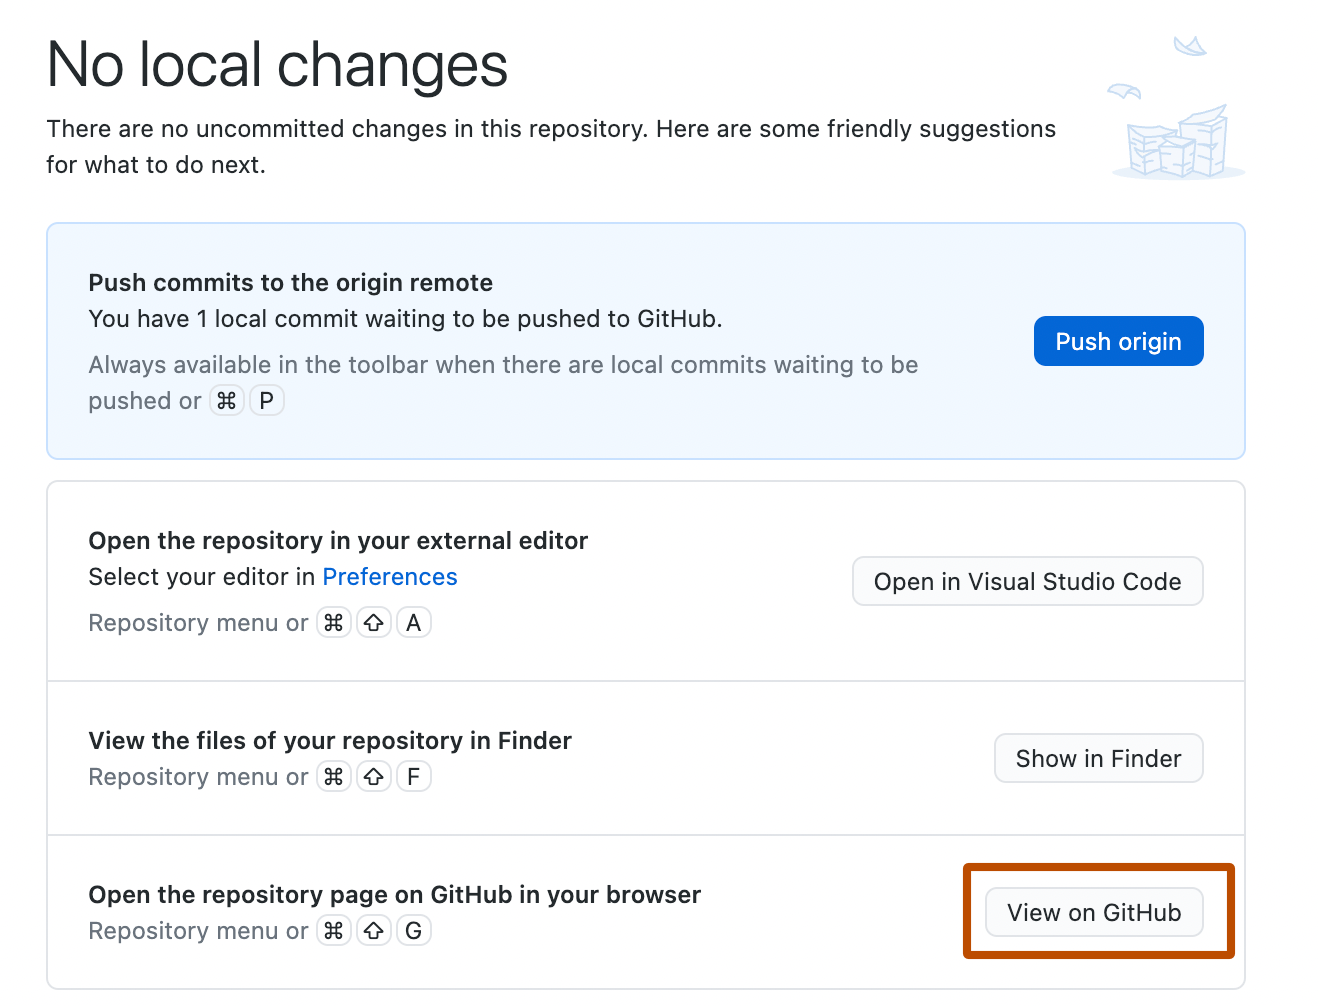 Captura de tela da tela "Sem alterações locais". Na lista de sugestões, o botão rotulado como "Exibir no GitHub", está realçado com um contorno laranja.